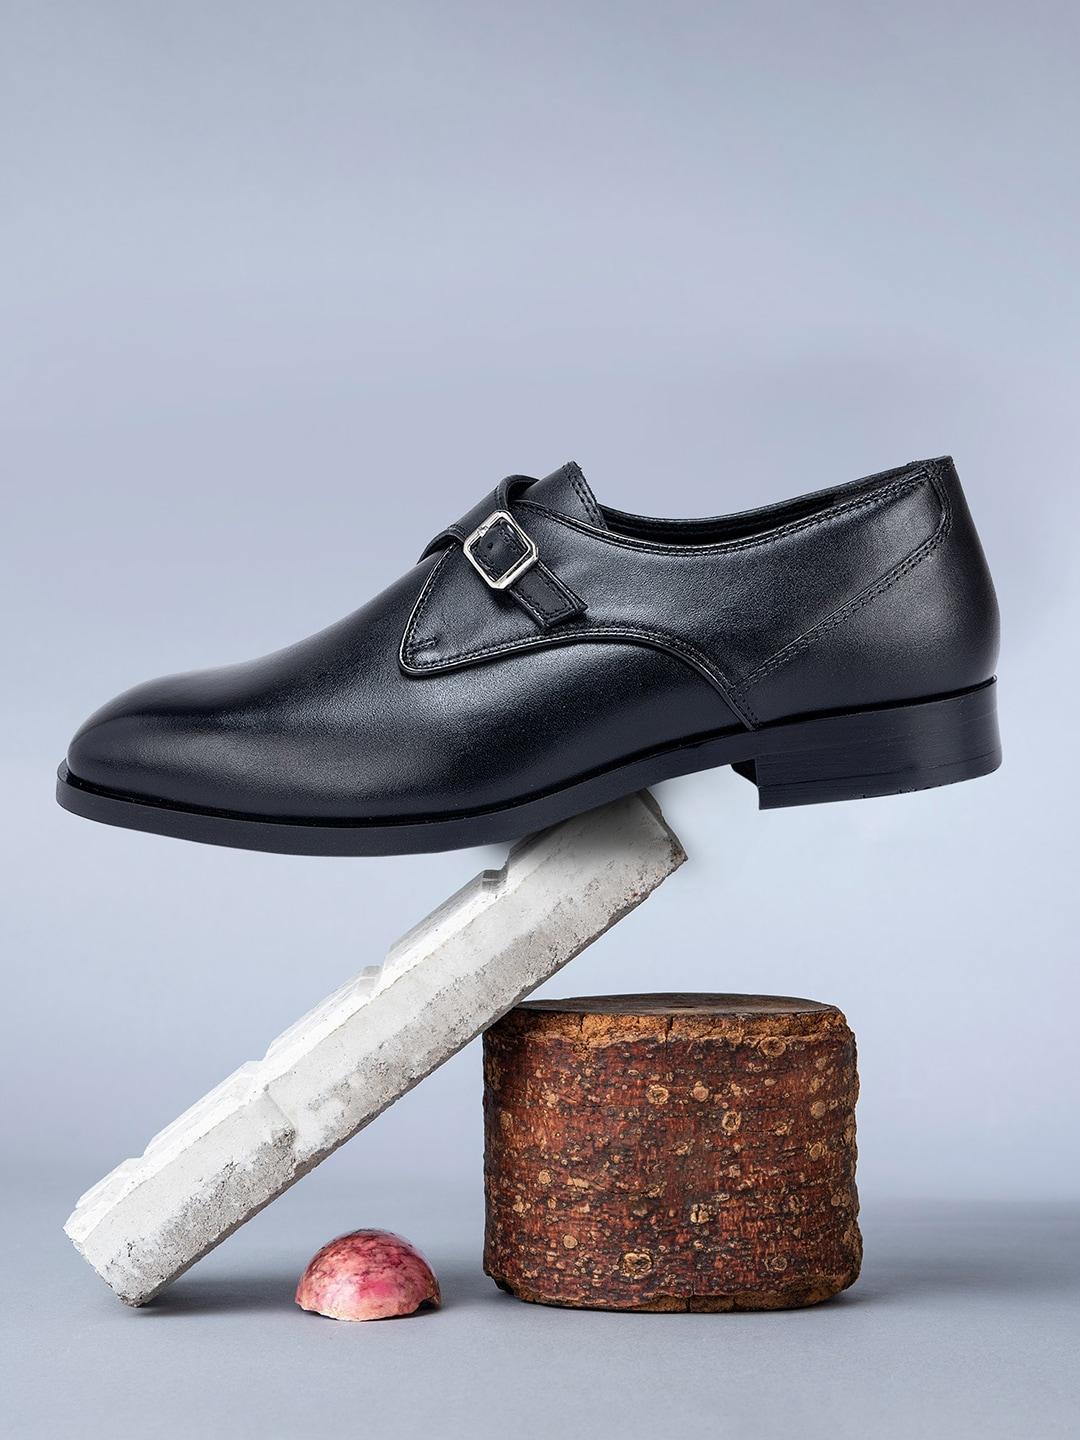 ROSSO BRUNELLO Men Single Straps Formal Monk Shoes